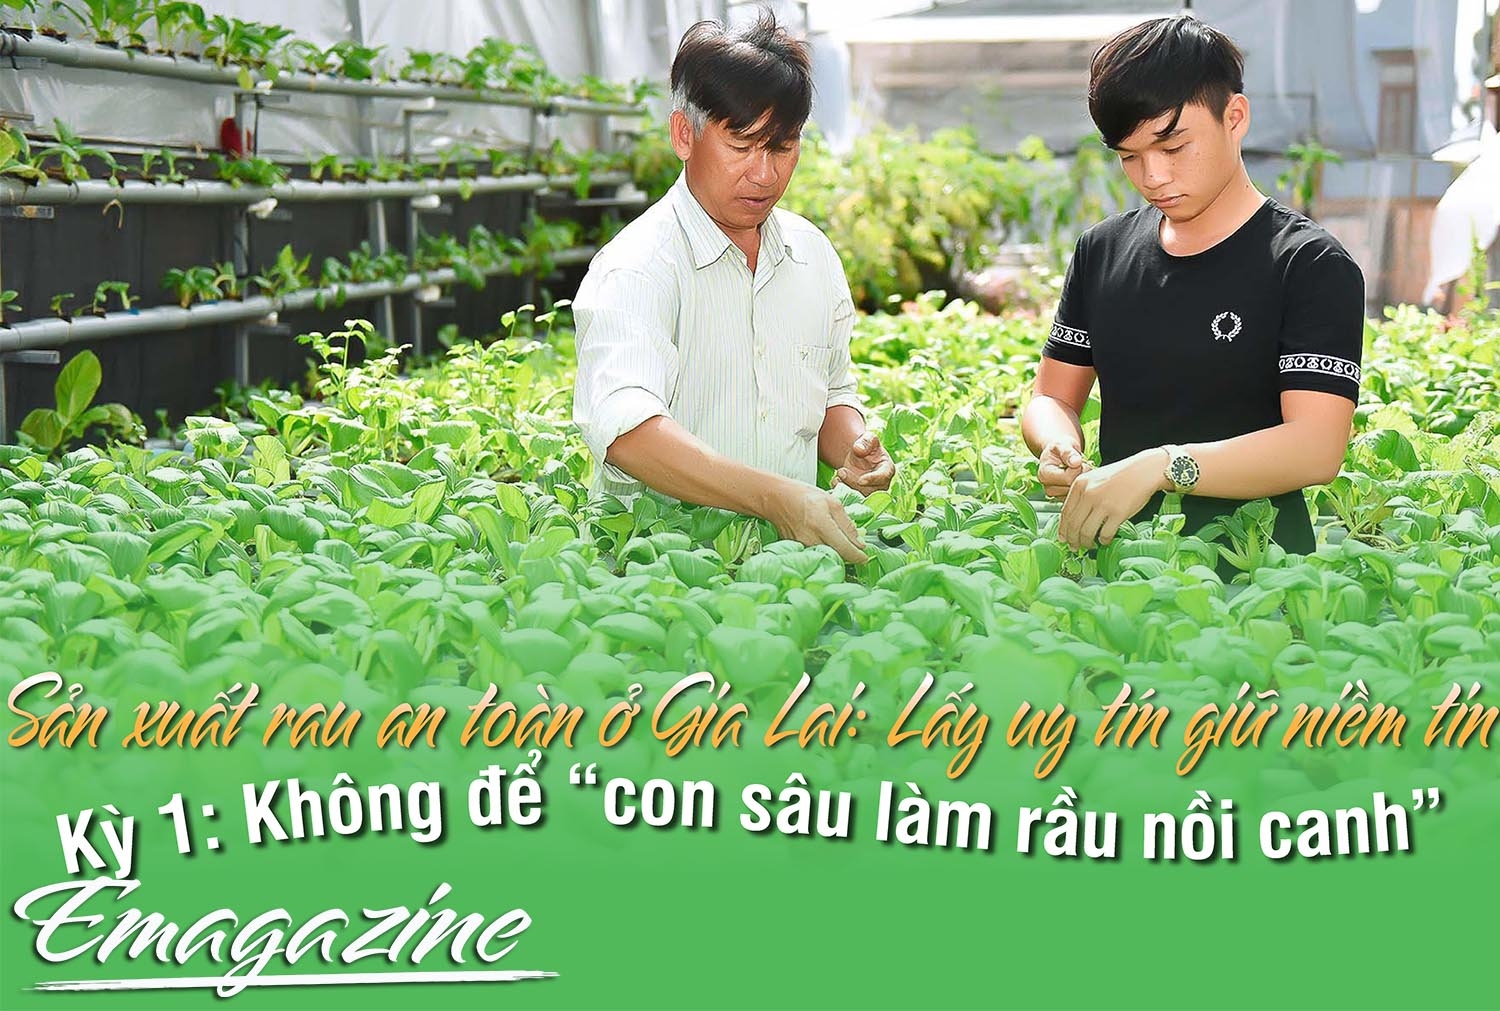 Sản xuất rau an toàn ở Gia Lai: Lấy uy tín giữ niềm tin-Kỳ 1: Không để "con sâu làm rầu nồi canh"